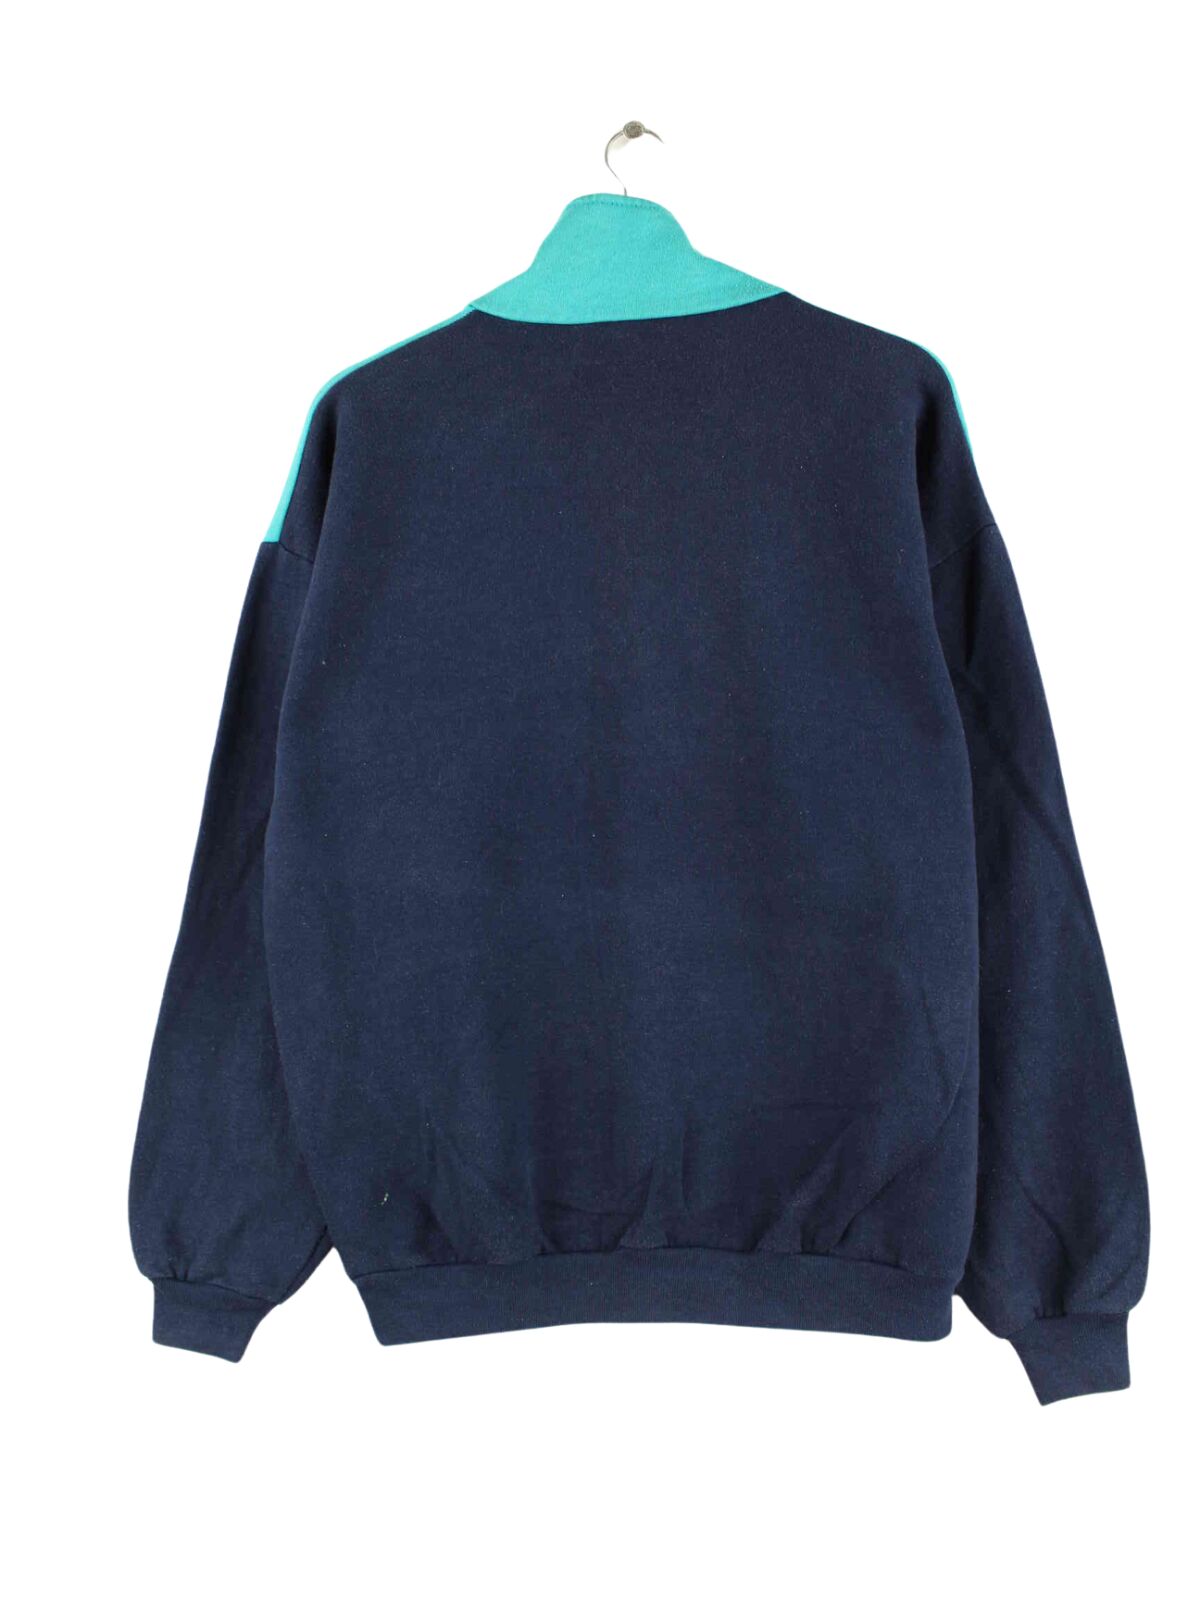 Adidas 80s Vintage Trefoil Print Half Zip Sweater Blau M (back image)